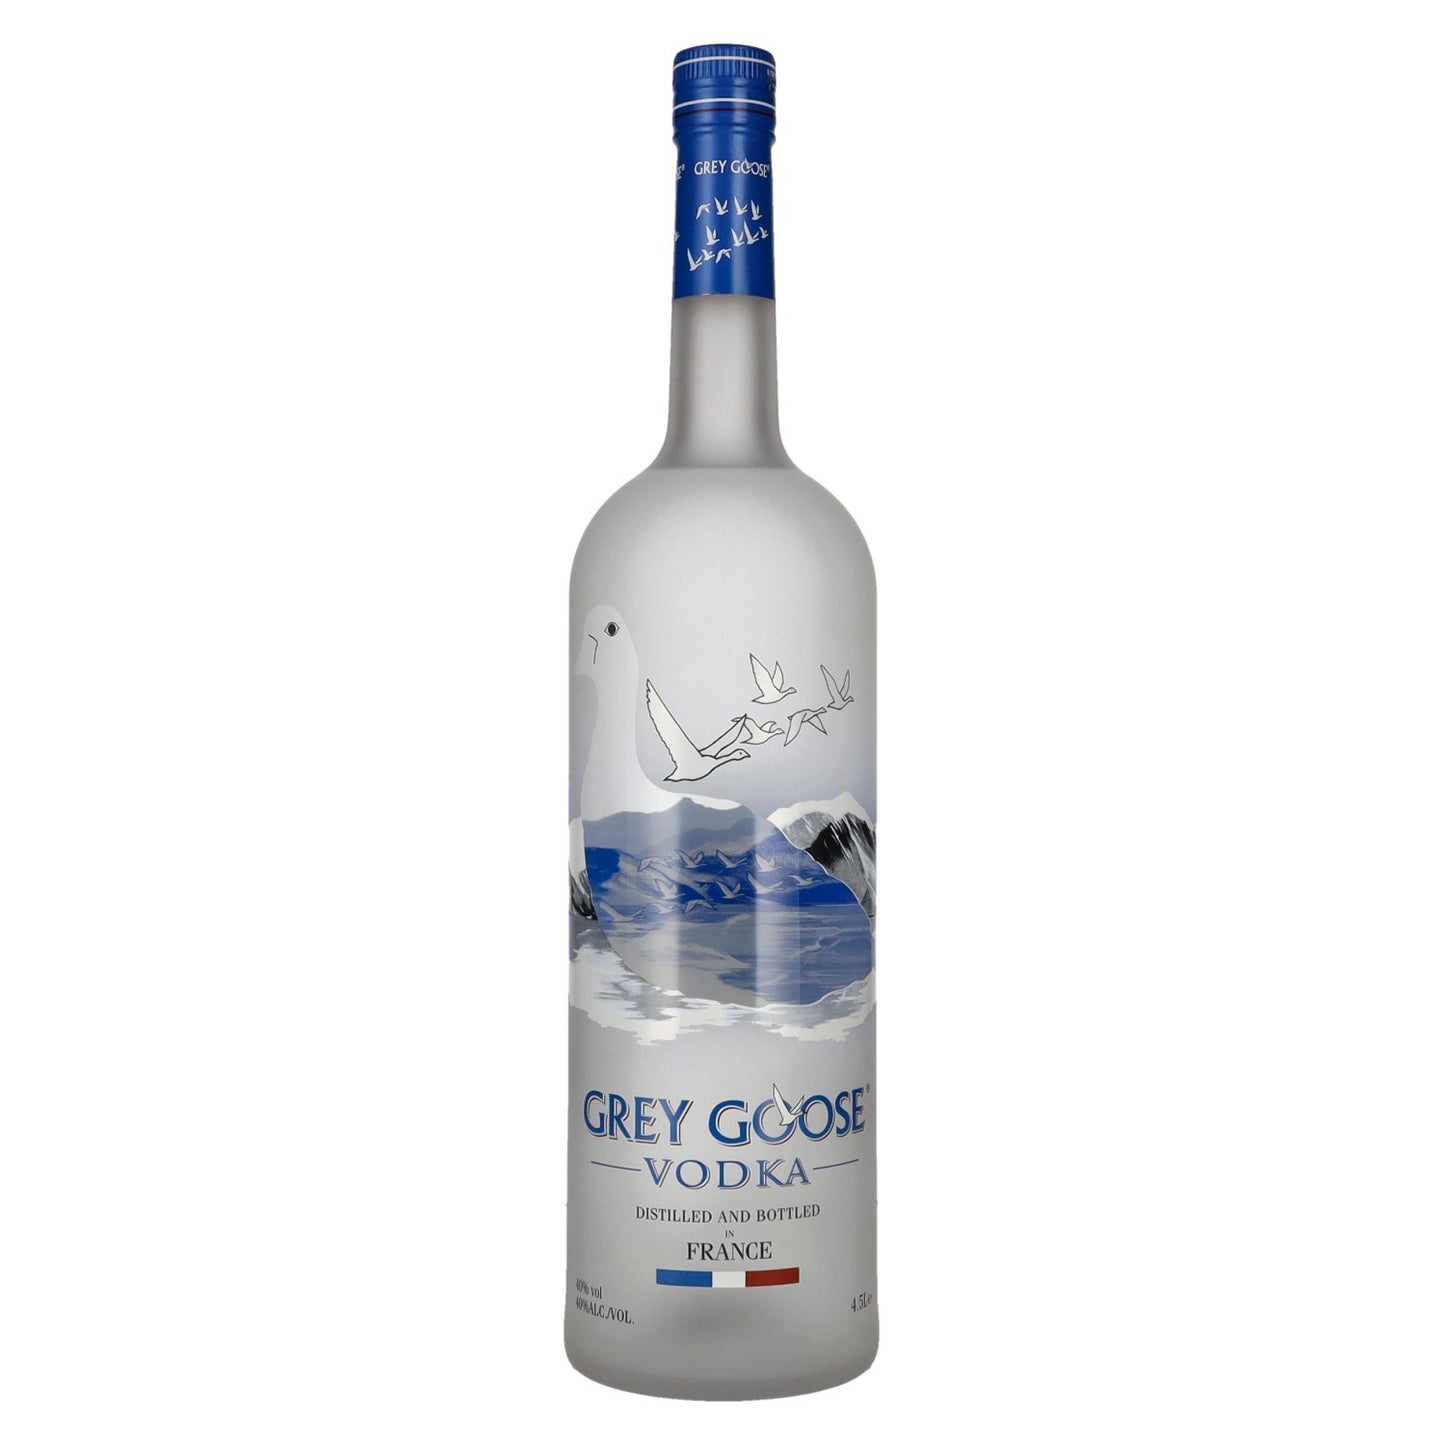 Vodka GREY GOOSE 4.5L. 40% vol.